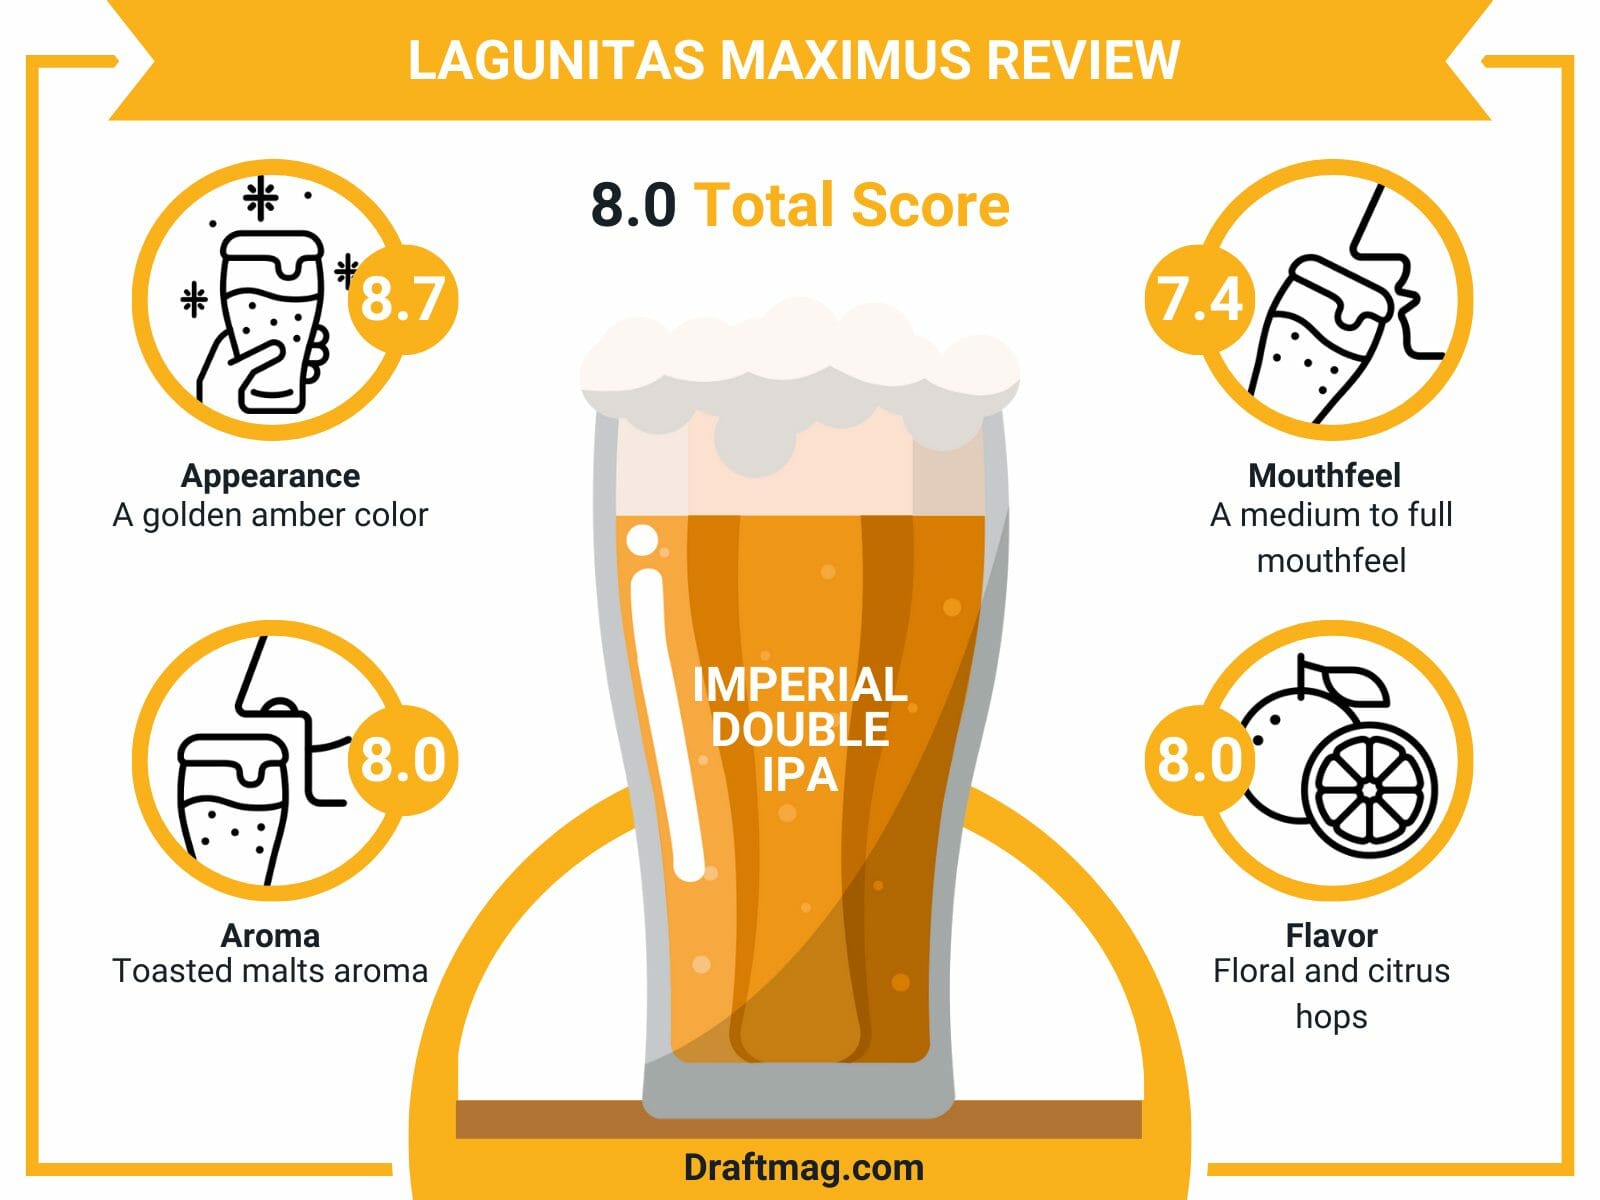 Lagunitas maximus review infographic